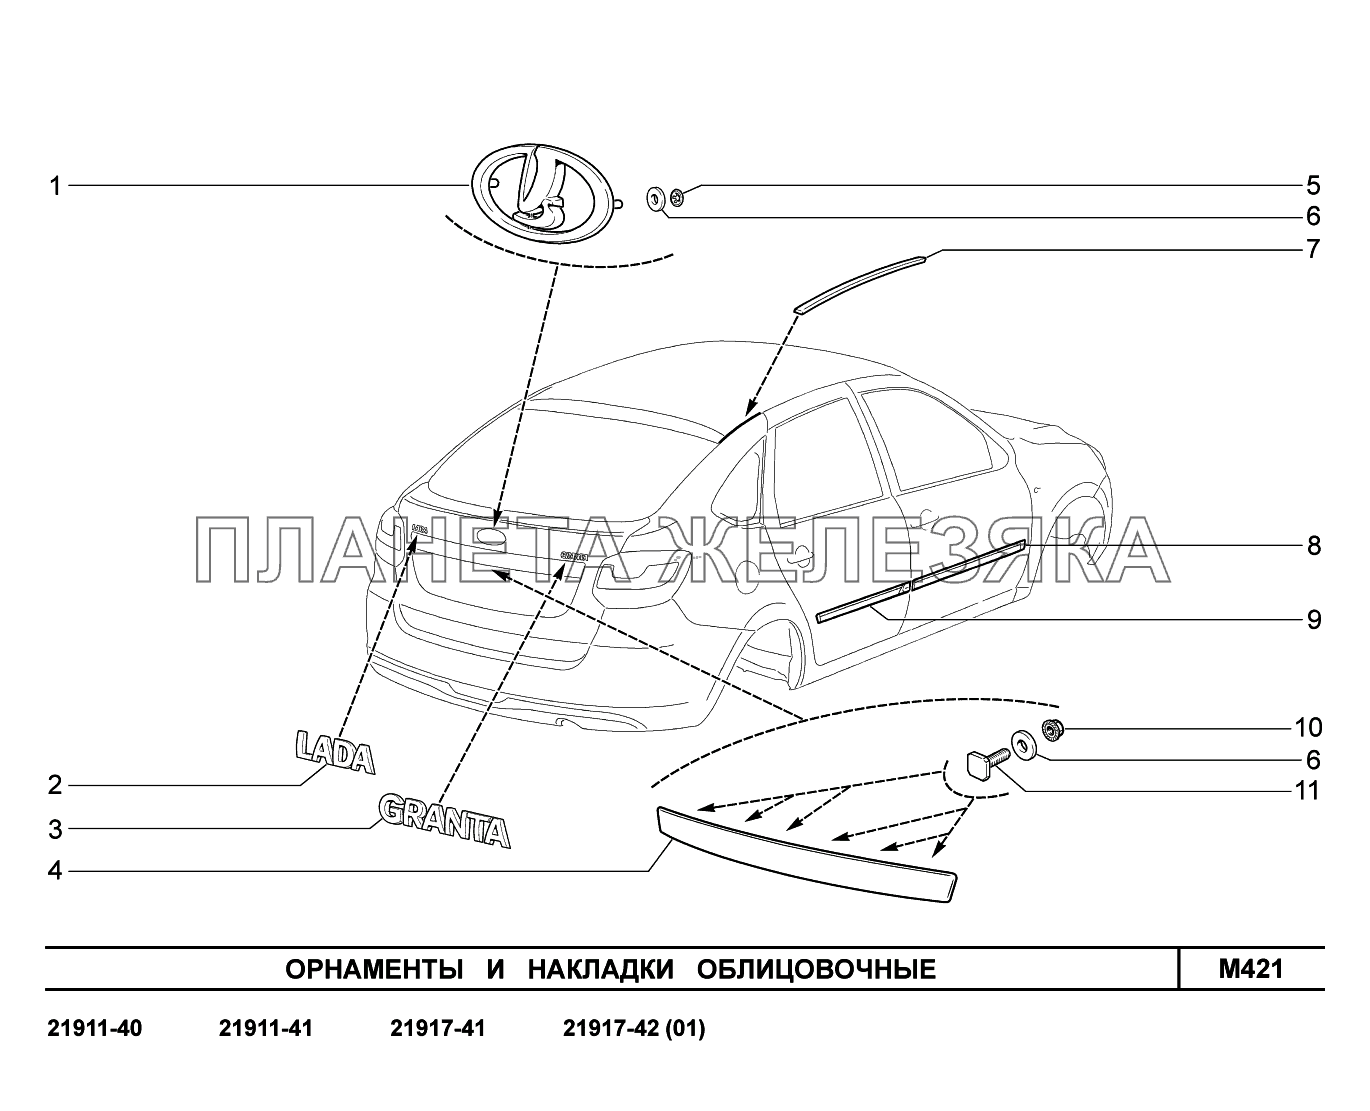 M421. Орнаменты и  накладки облицовочные Lada Granta-2190